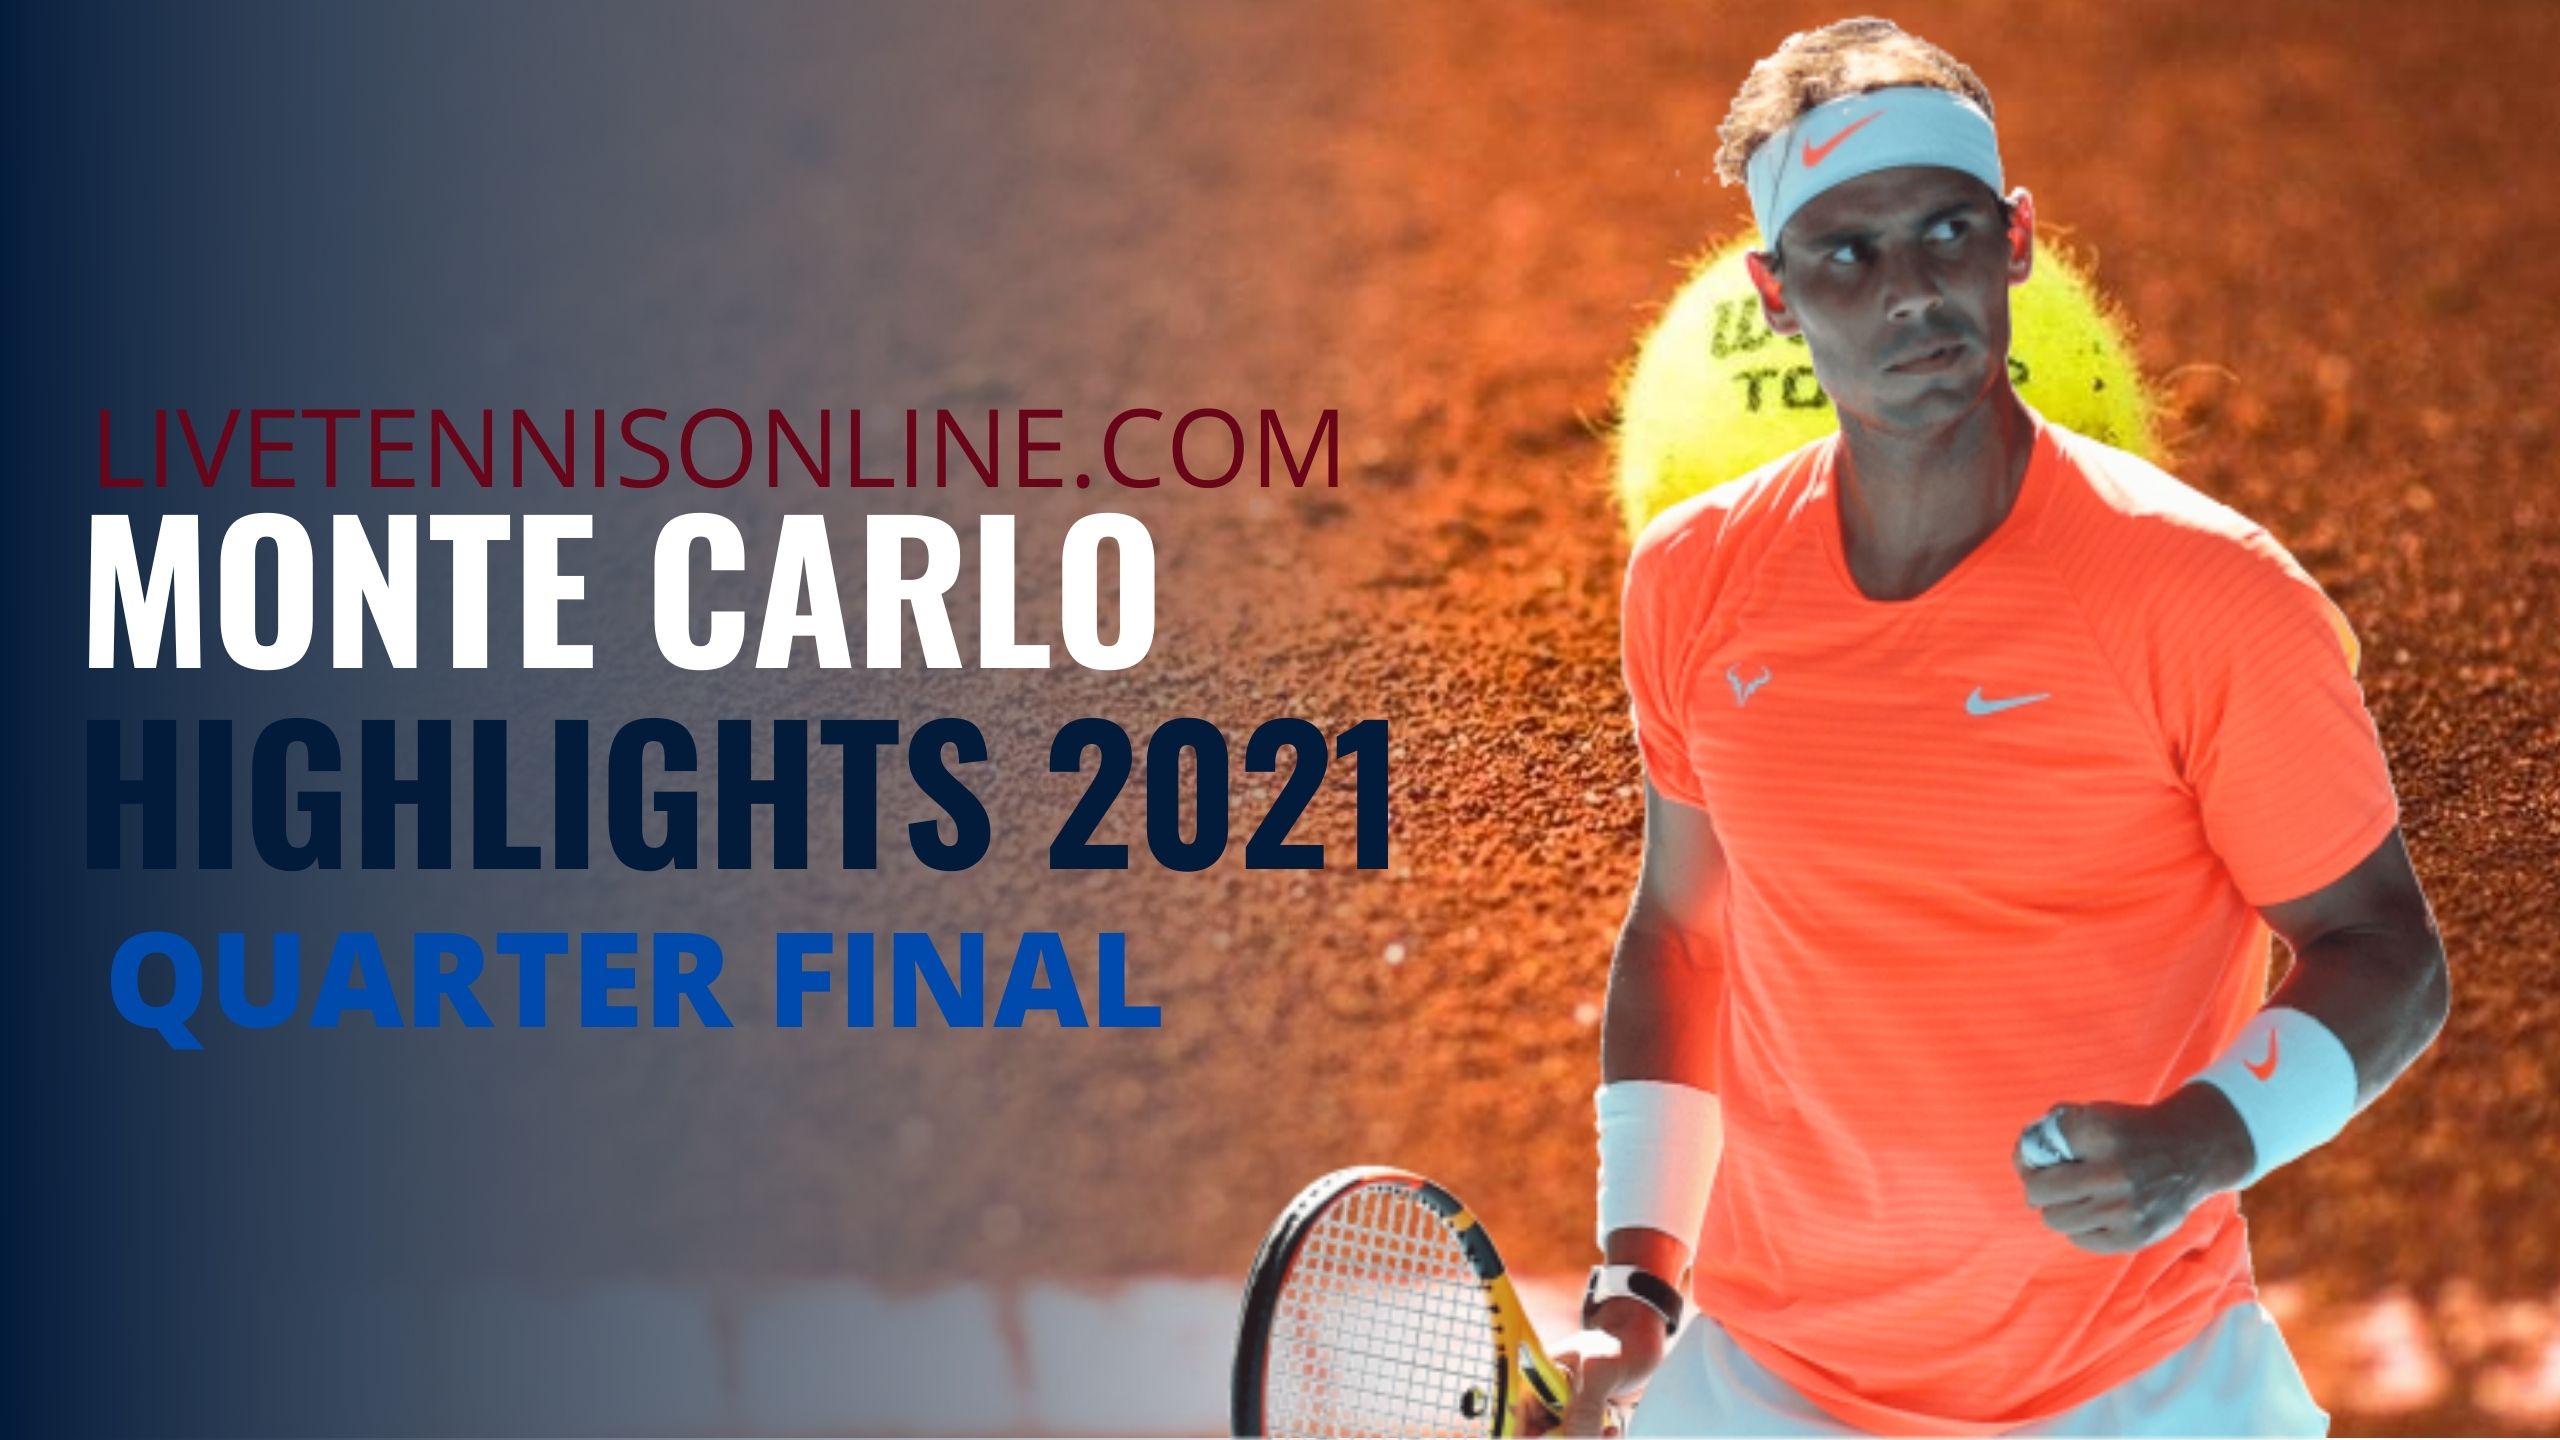 Rublev Vs Nadal Quarter Final Highlights 2021